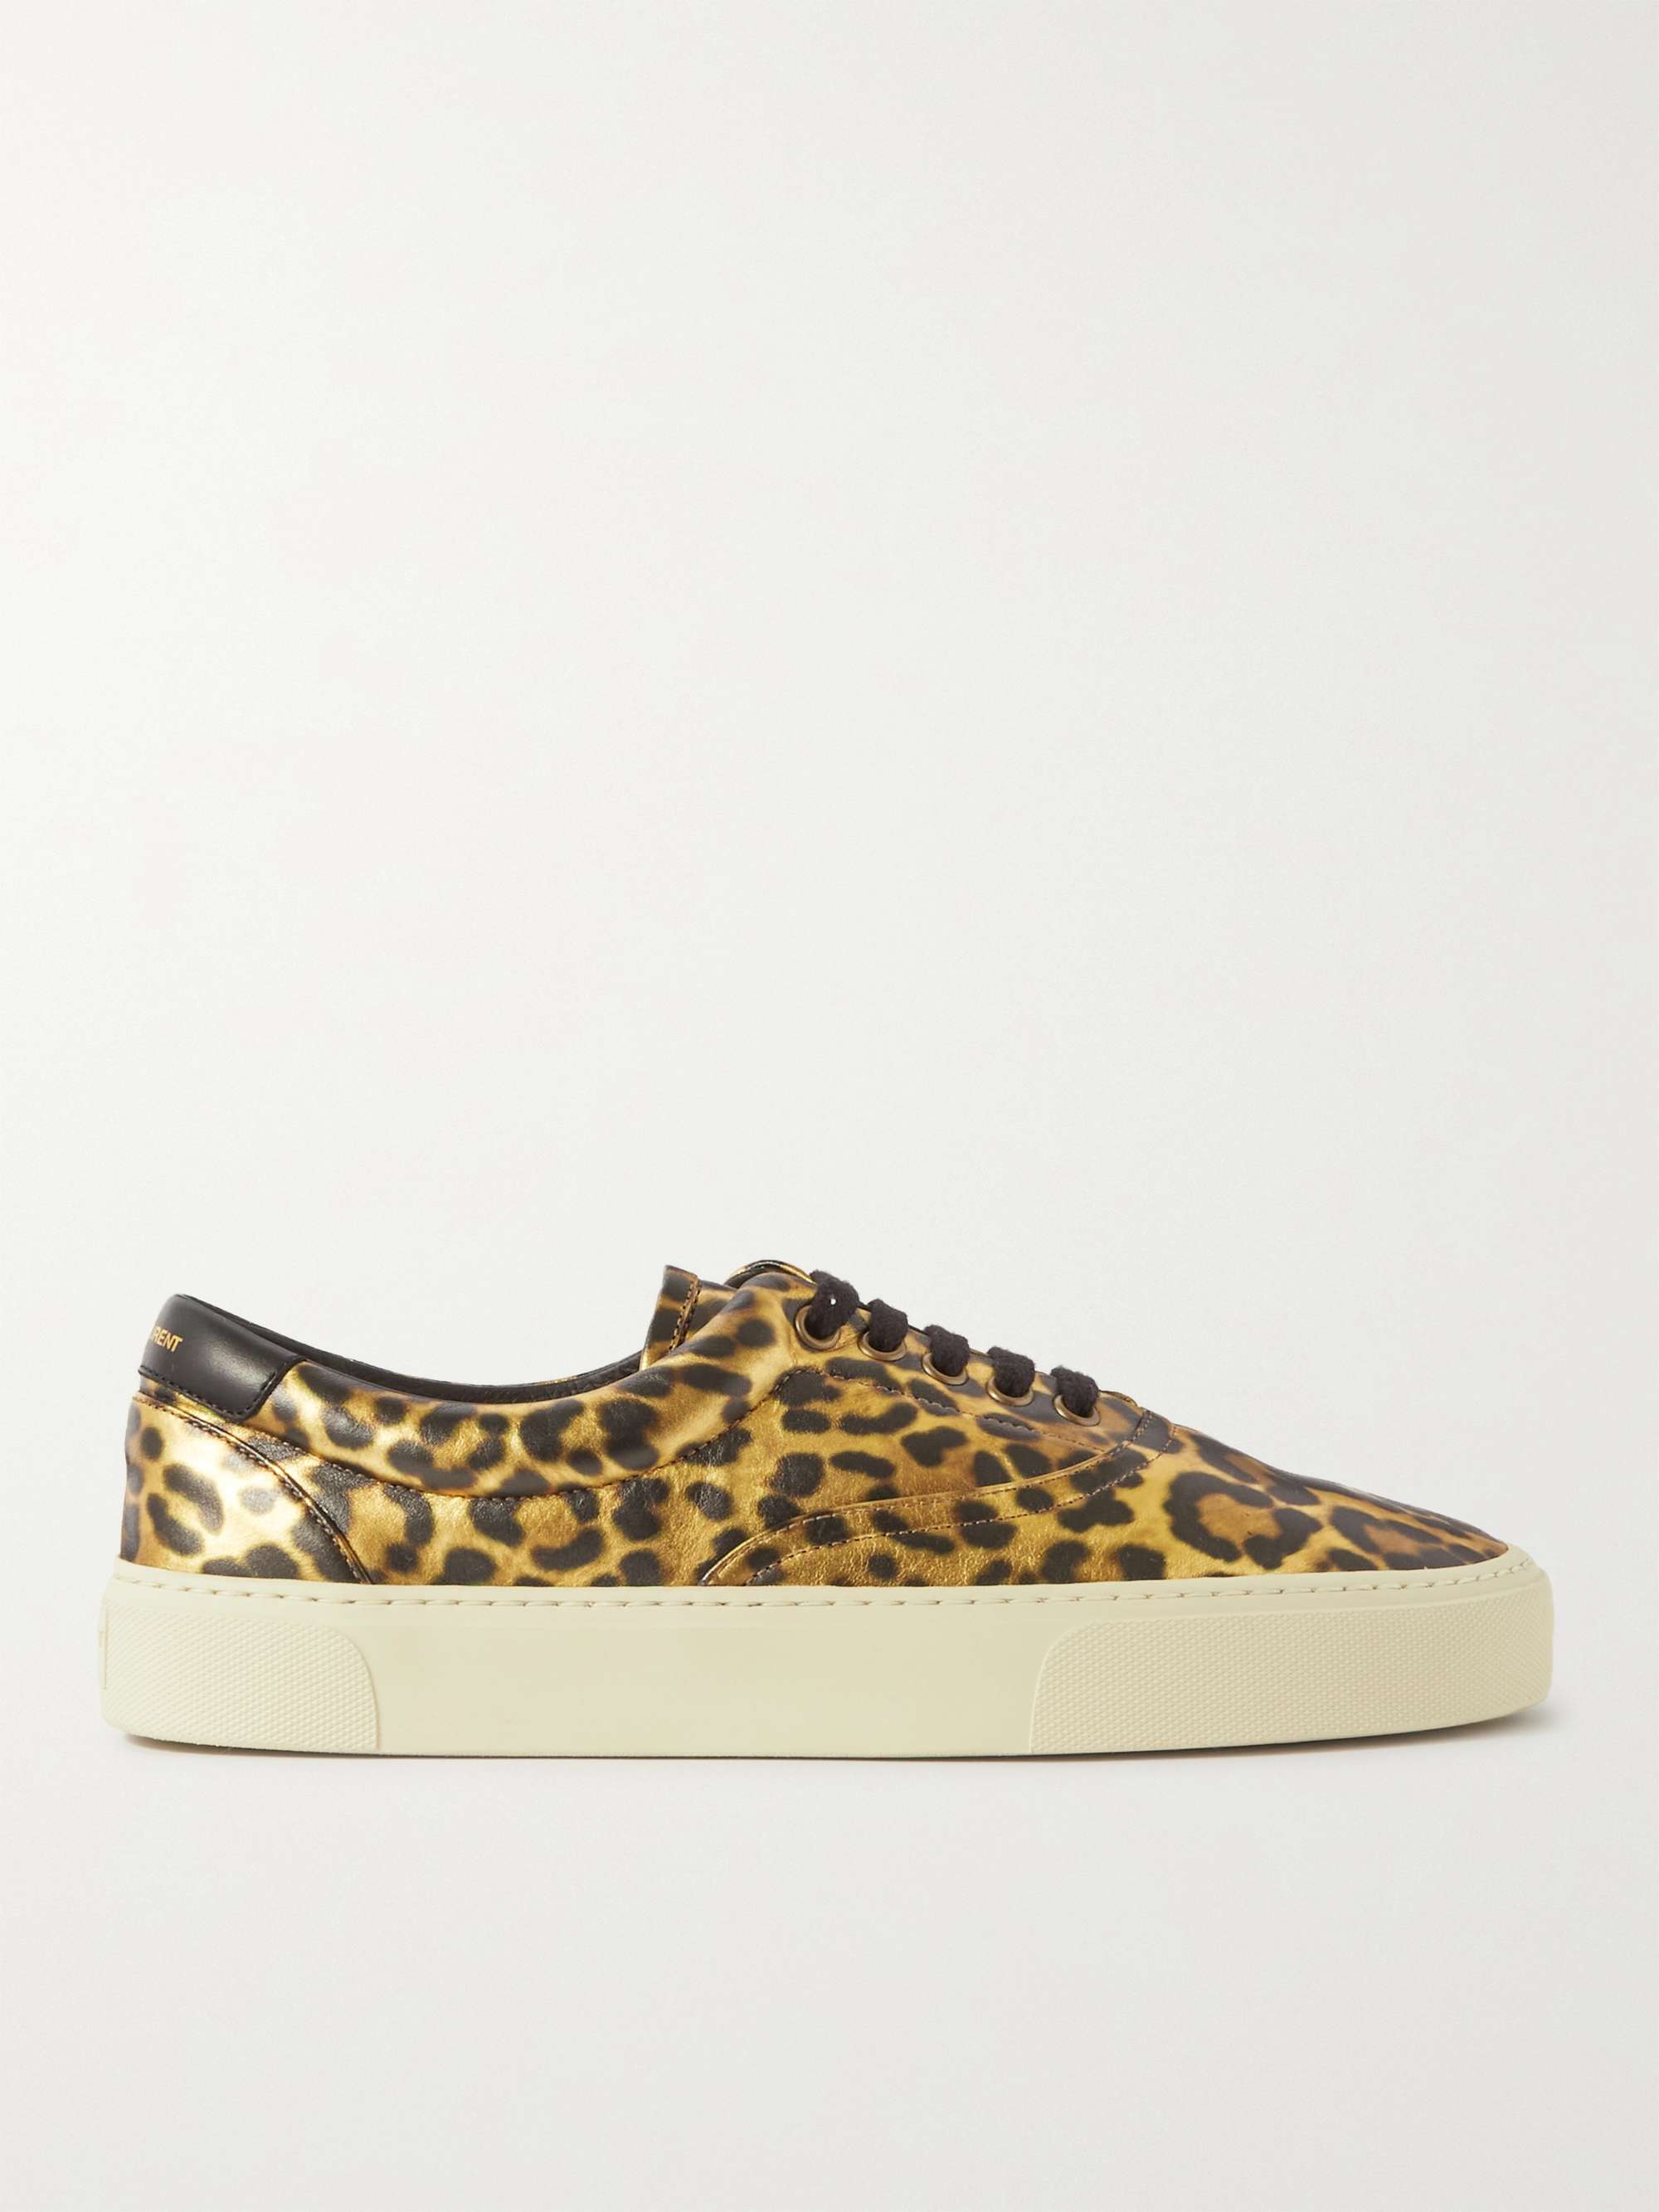 SAINT LAURENT Venice Leopard-Print Leather Sneakers | MR PORTER